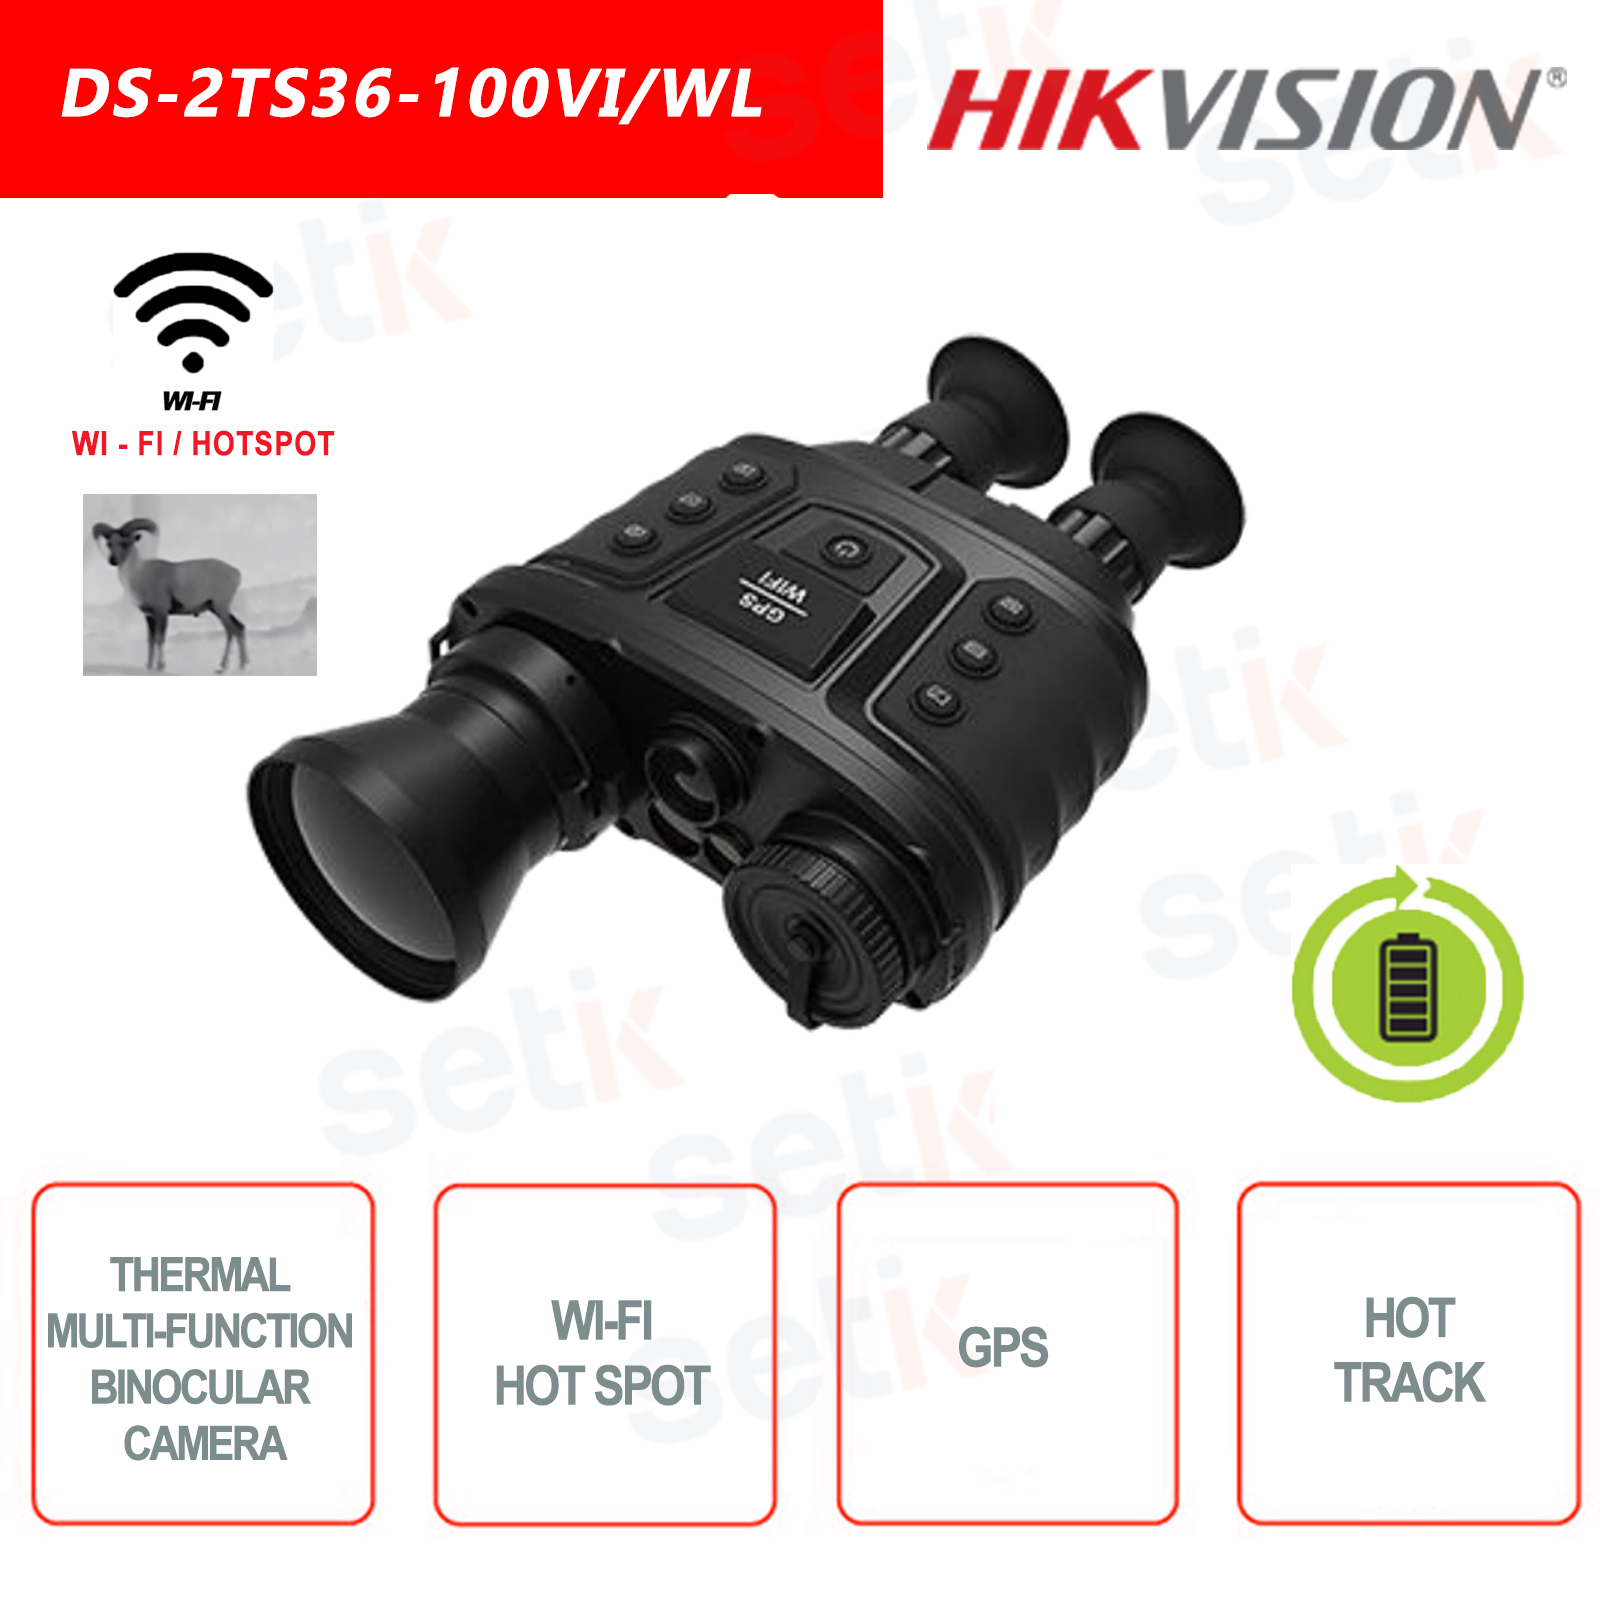 DS-2TS36-100VI/WL - Caméra thermique multifonction Hikvision pour